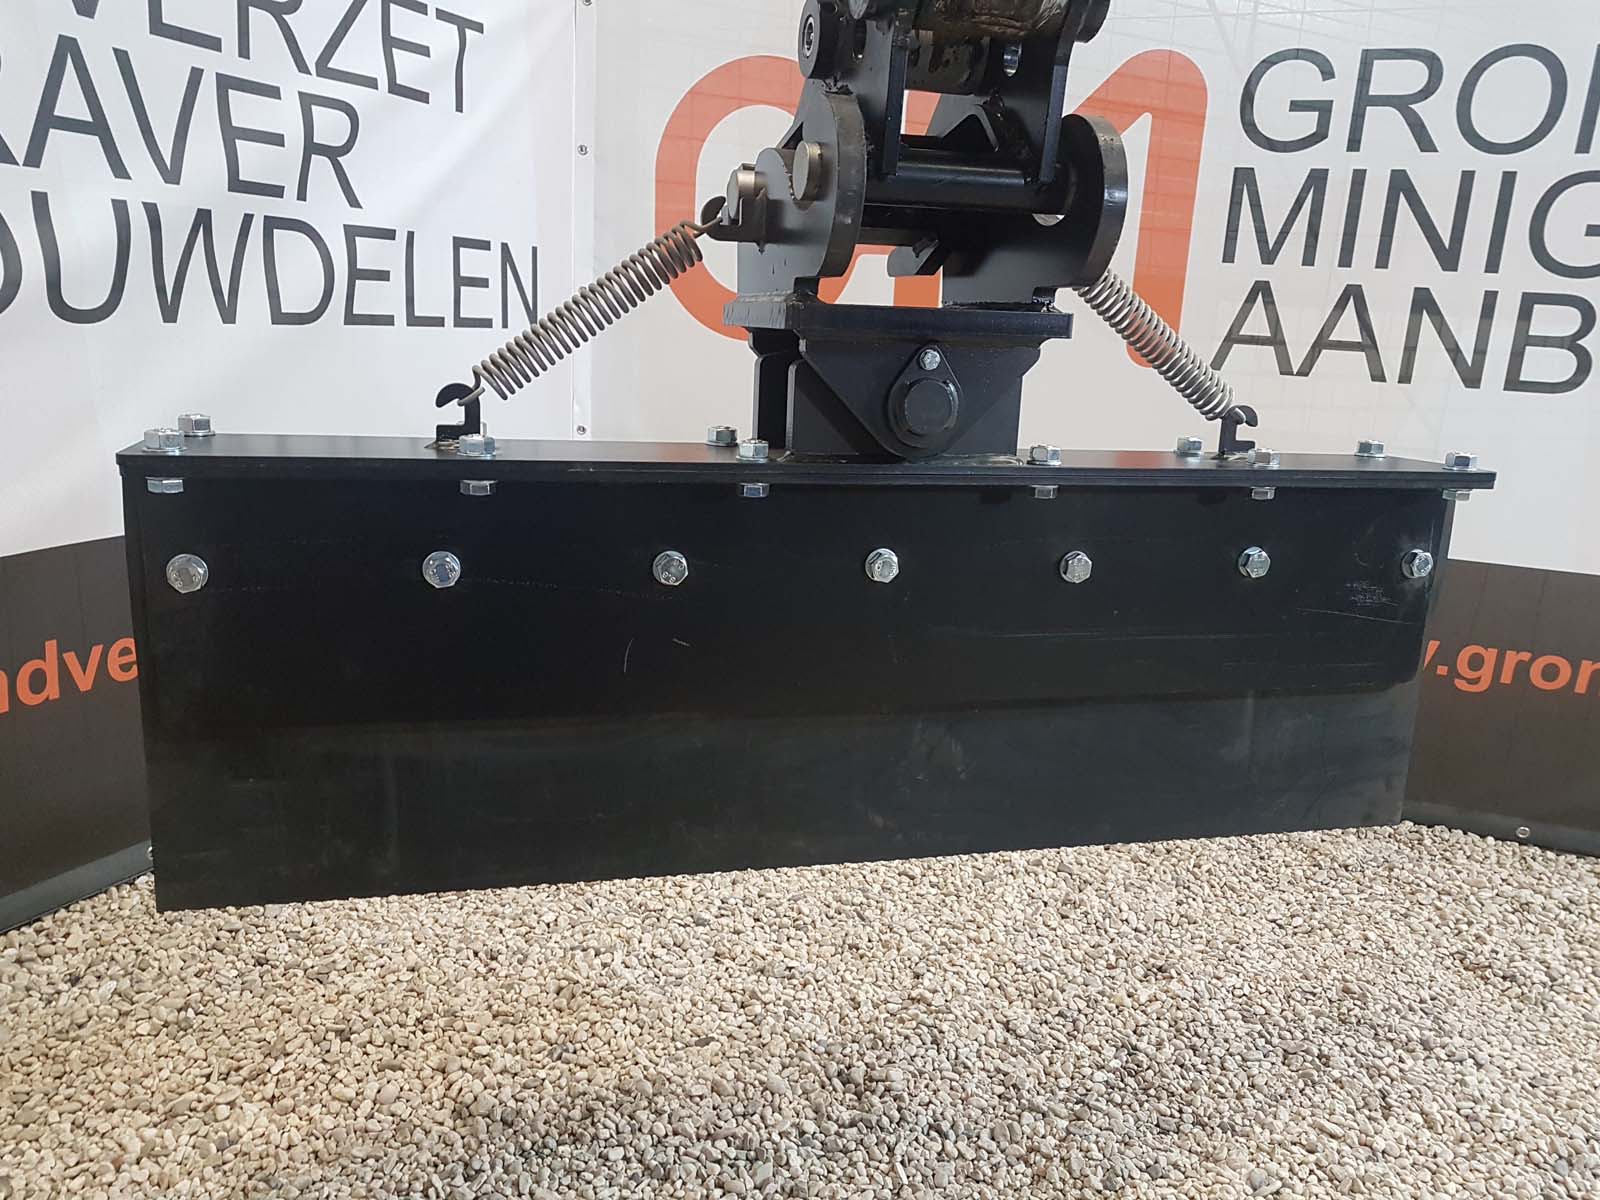 Grondverzet Minigraver Aanbouwdelen Grondschuif - Breedte 124cm CW05X Pendel 